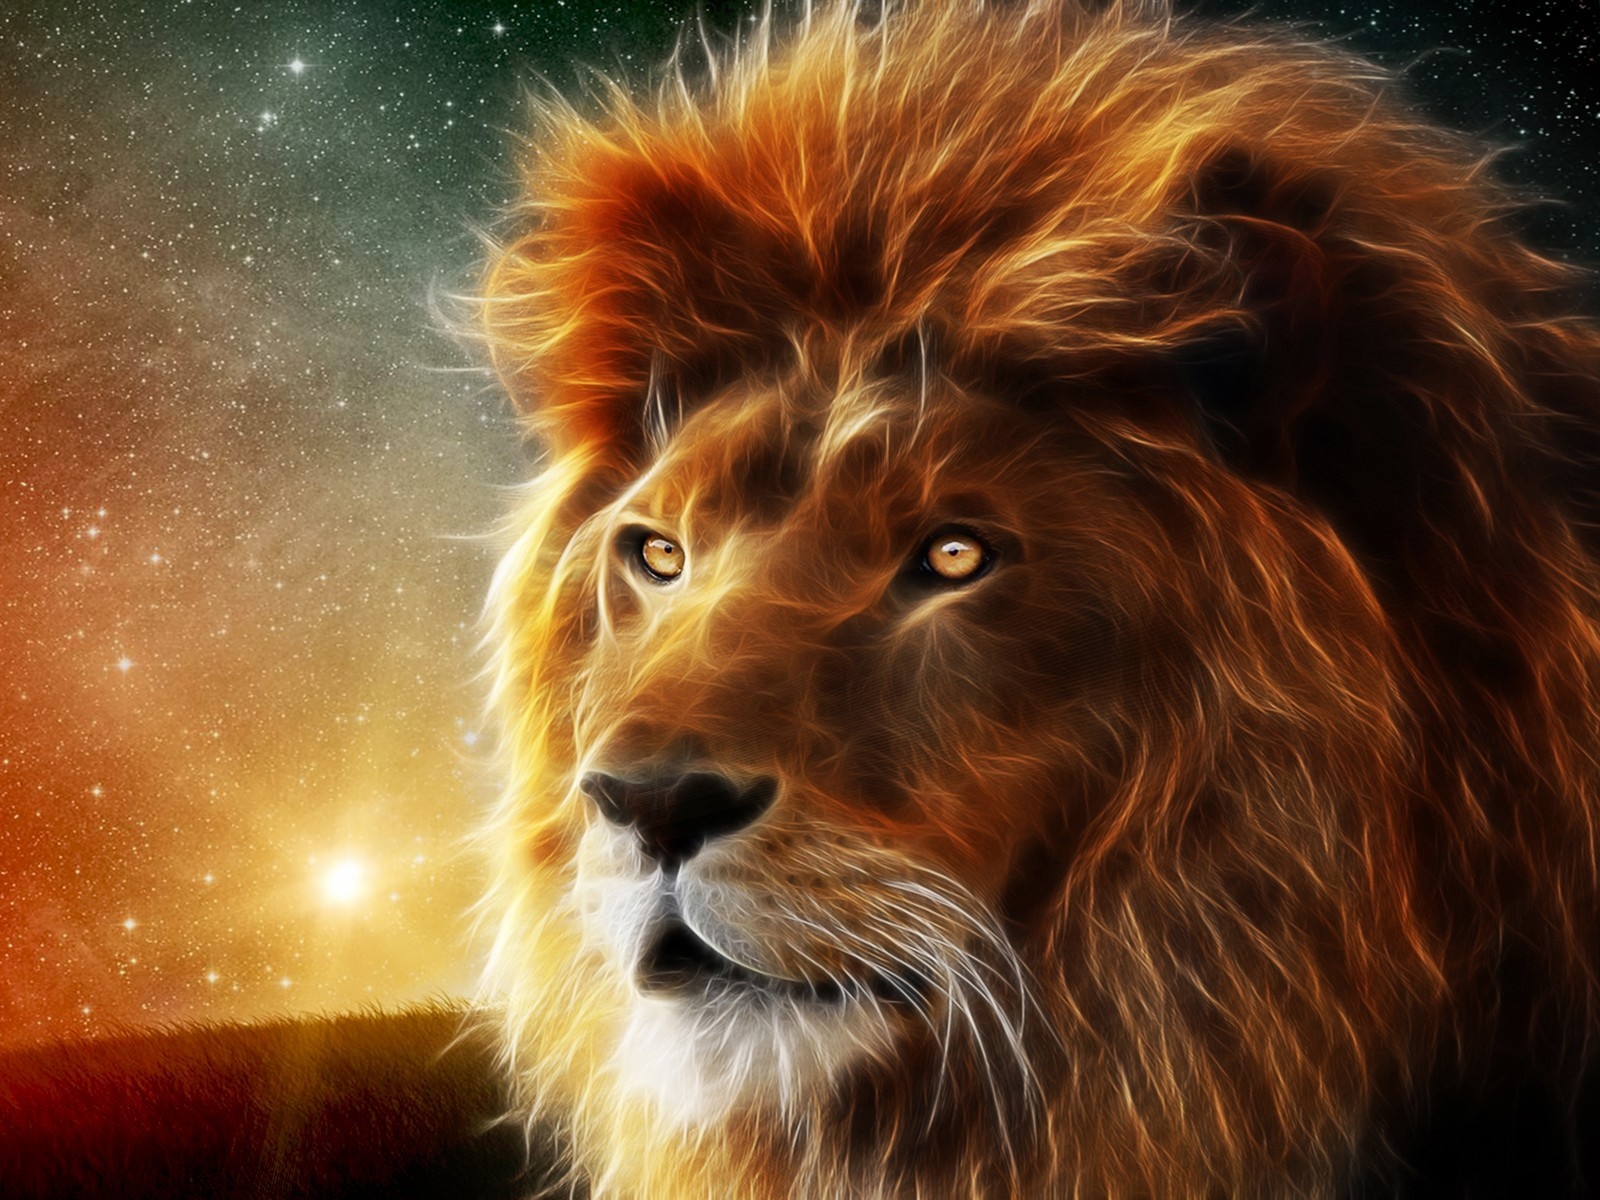 Lion Portrait for 1600 x 1200 resolution